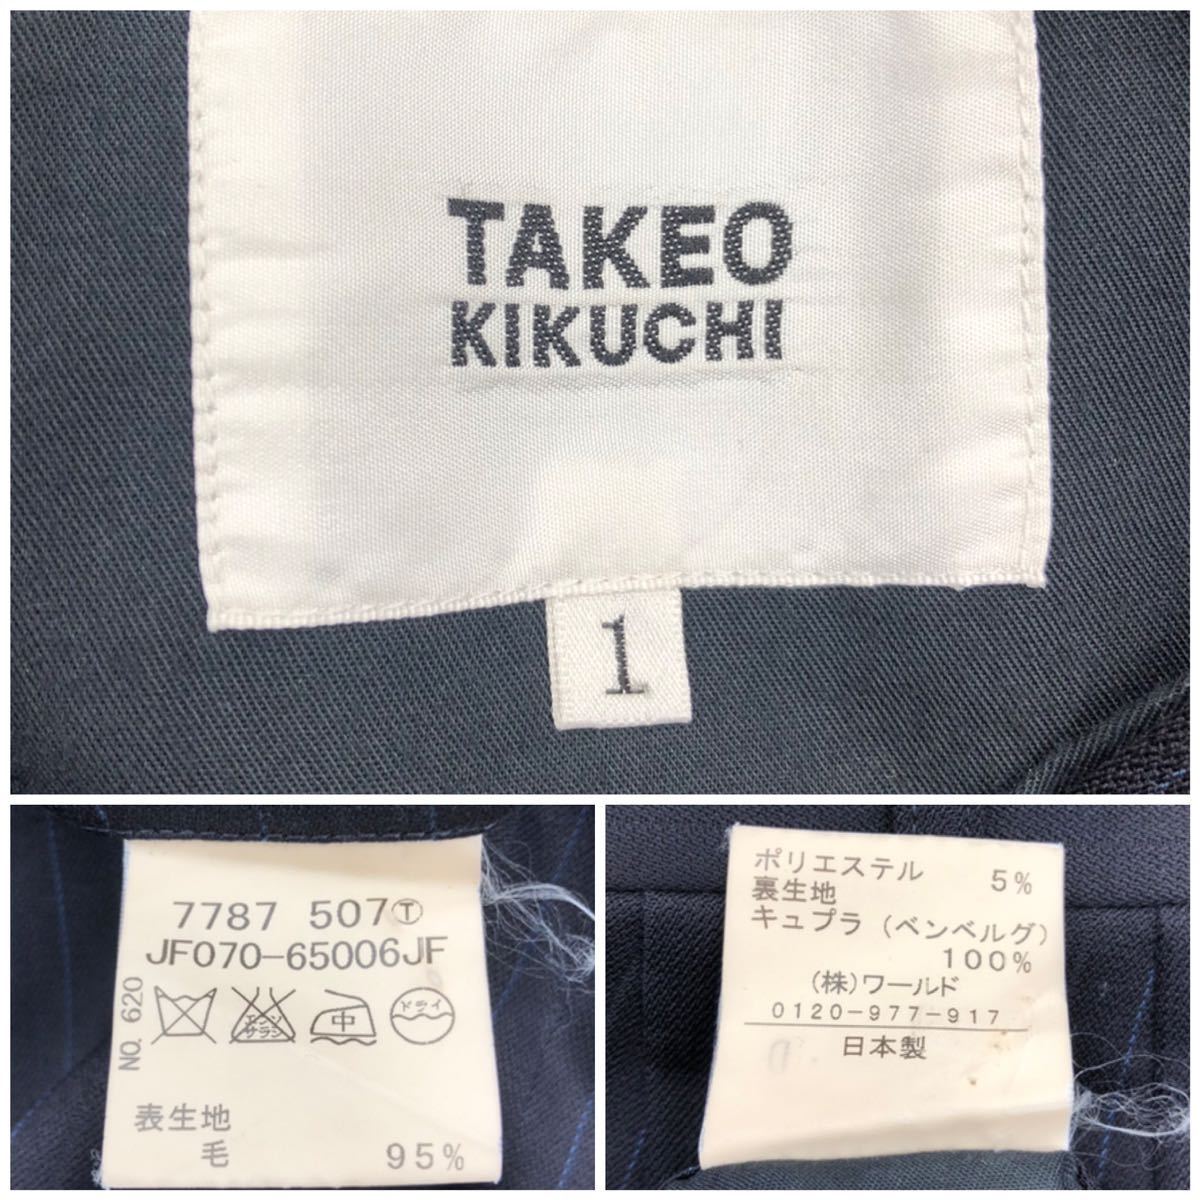 TAKEO KIKUCHI Takeo Kikuchi мужской выставить костюм жакет общий подкладка 2B брюки 1 tuck темно-синий полоса размер 1 S world 